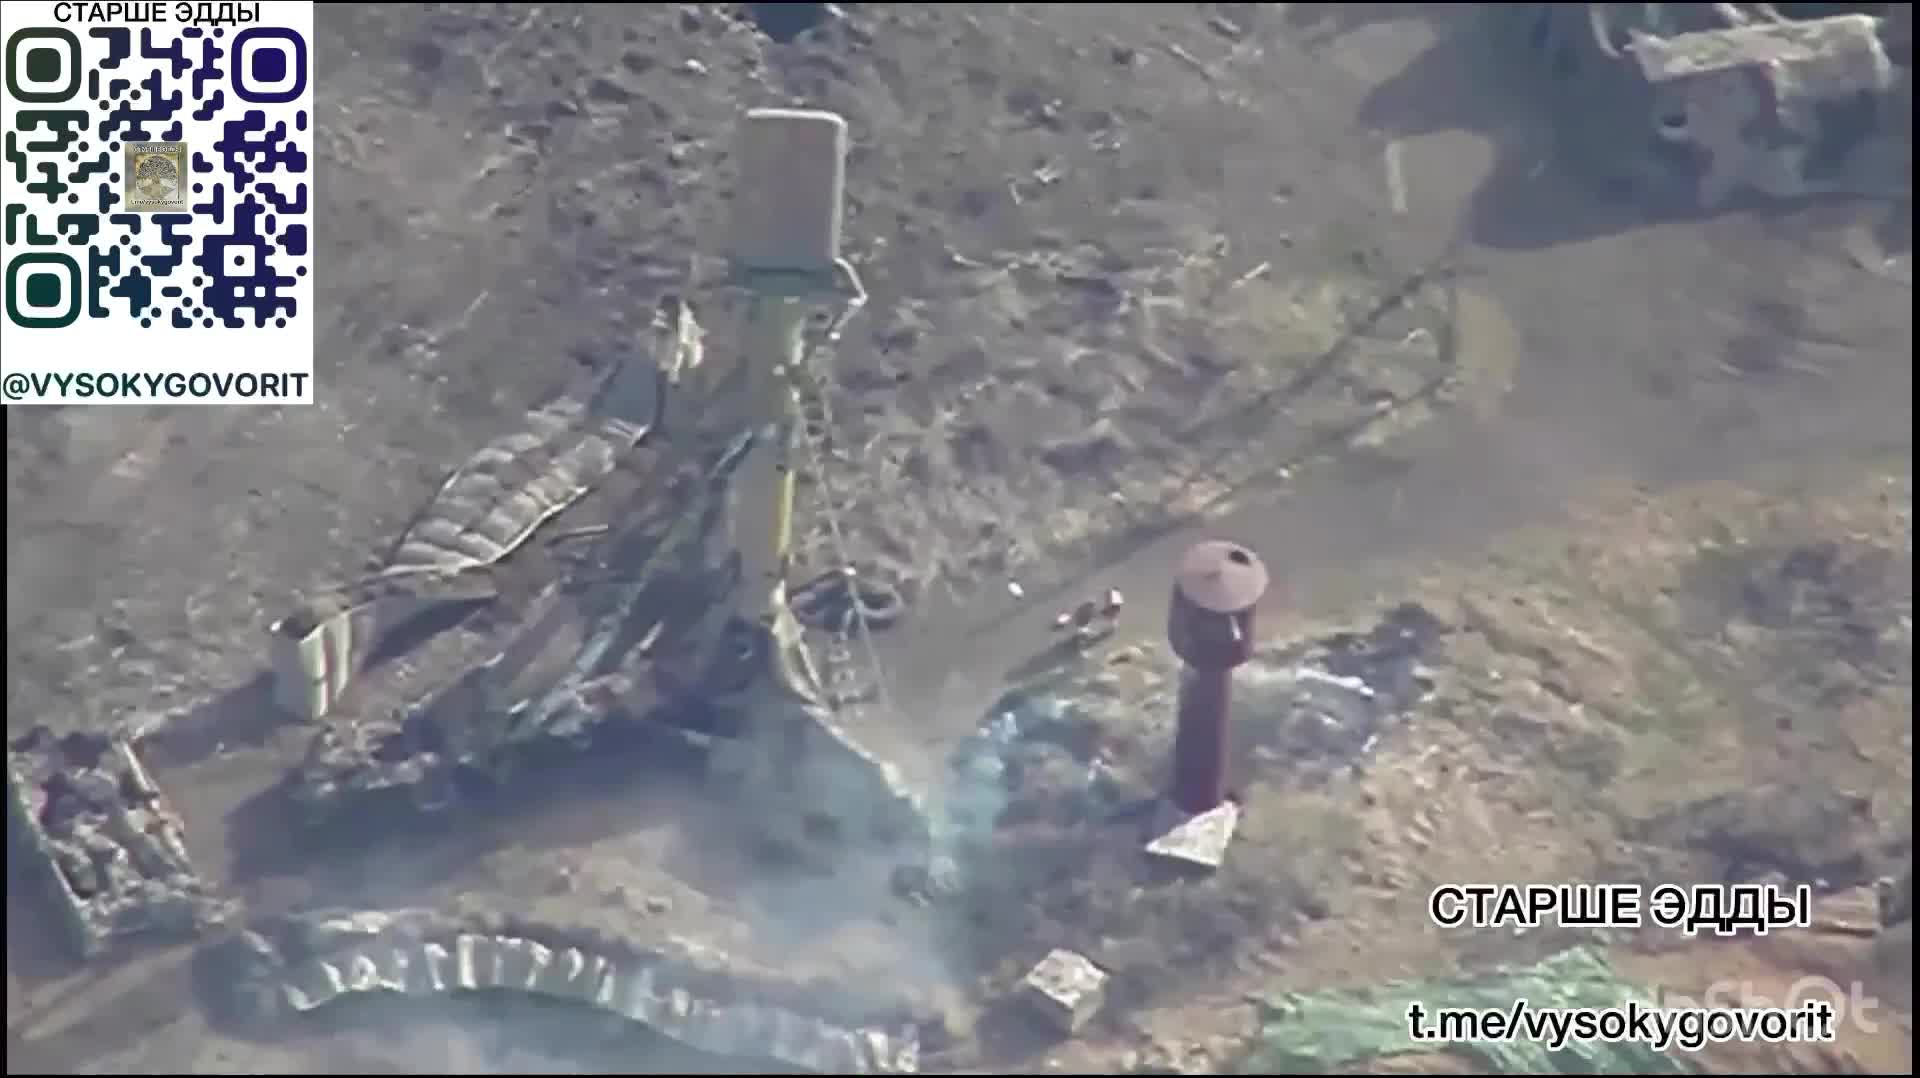 Thế giới - Khoảnh khắc Nga tấn công chính xác, S-300 Ukraine bị phá hủy, cột bụi bốc cao hàng chục mét